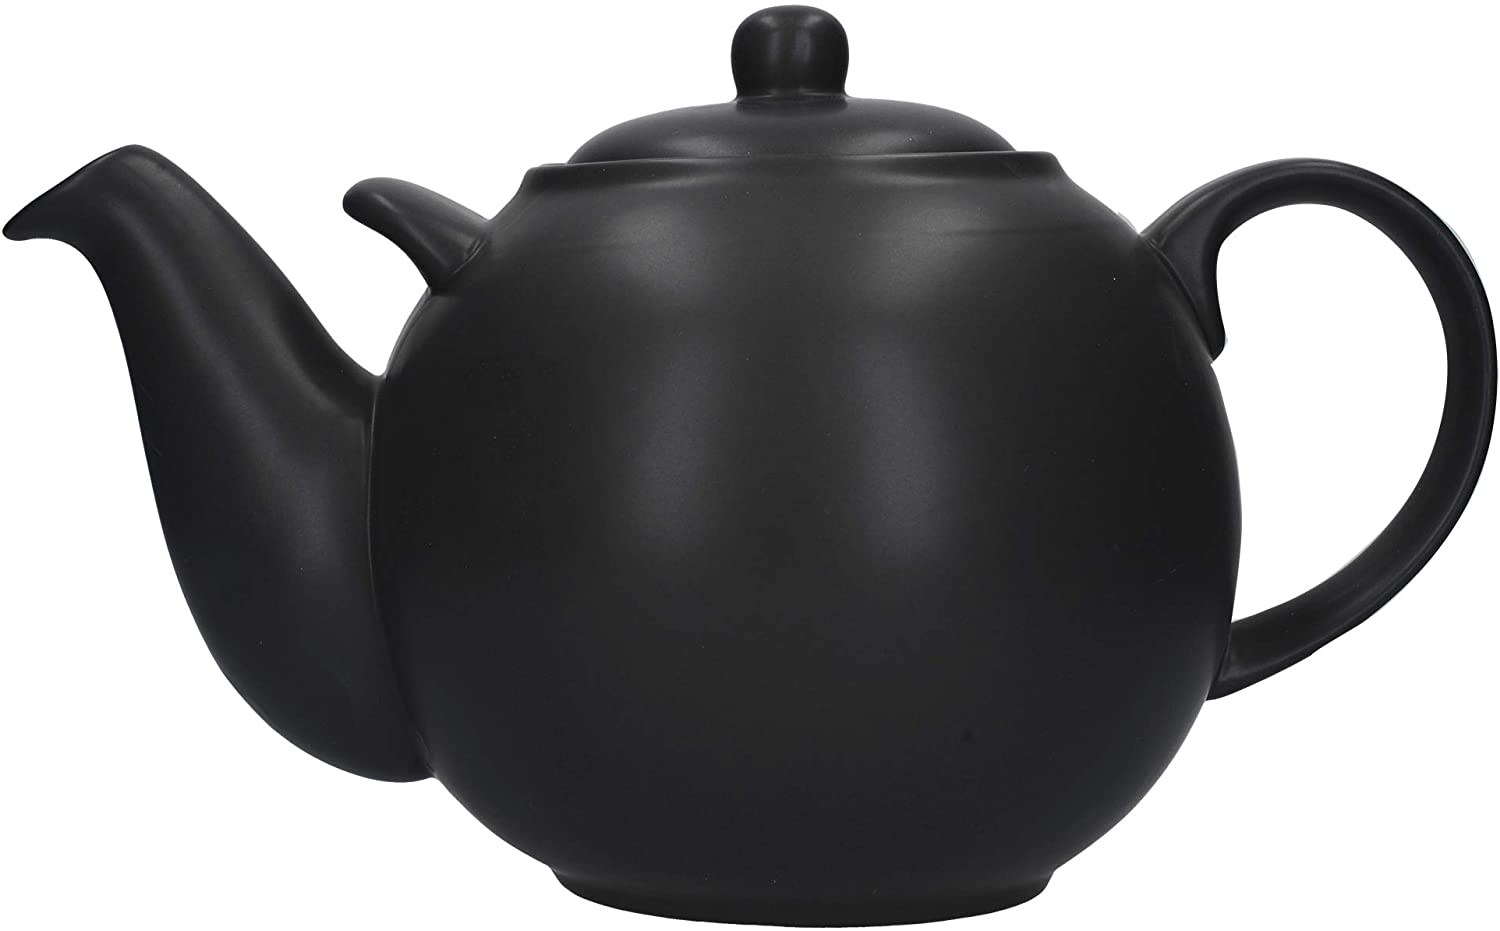 London Pottery 10 Cup Globe Teapot Black